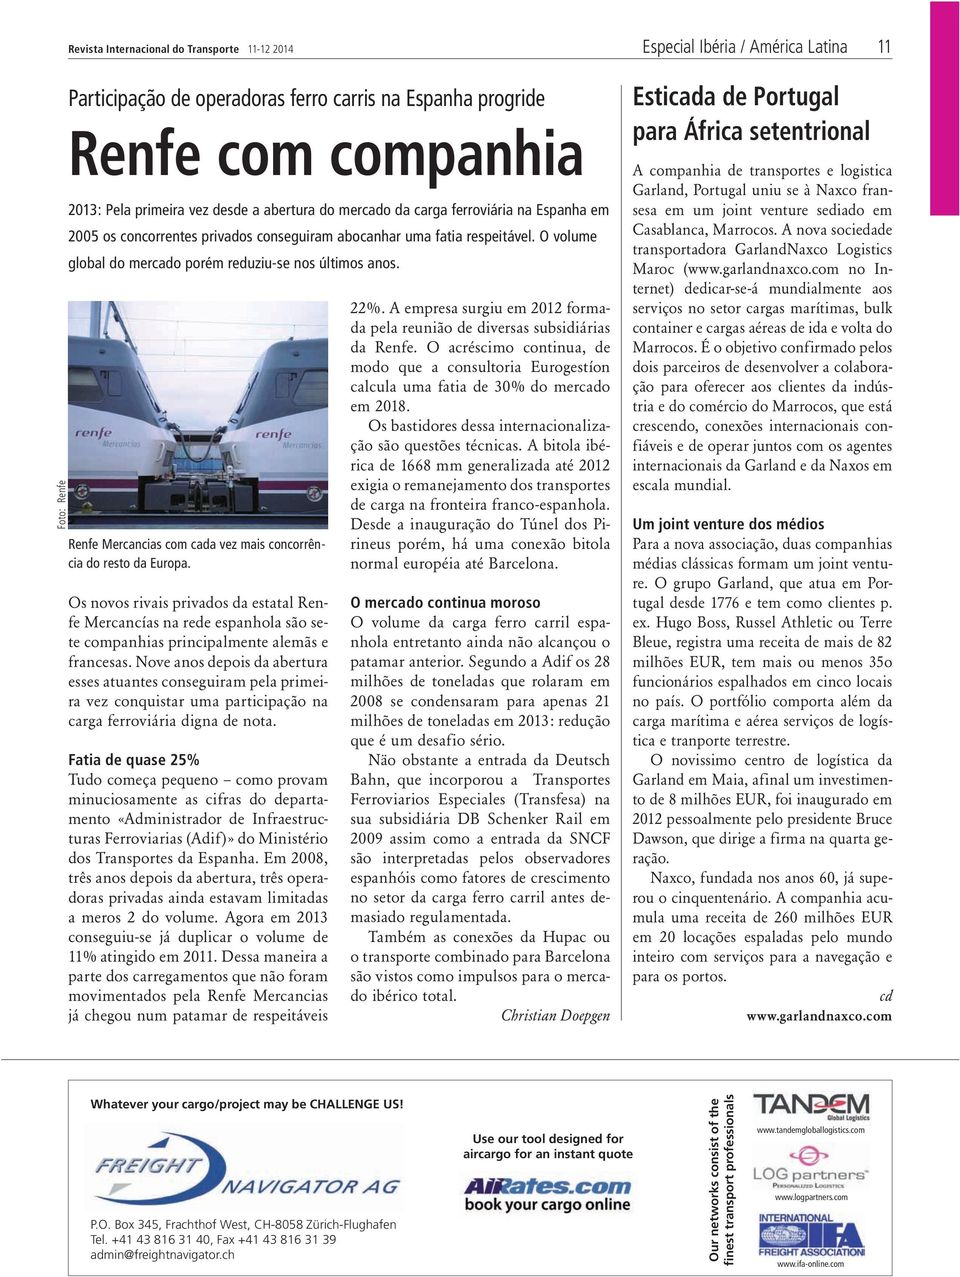 Renfe Mercancias com cada vez mais concorrência do resto da Europa. Os novos rivais privados da estatal Renfe Mercancías na rede espanhola são sete companhias principalmente alemãs e francesas.